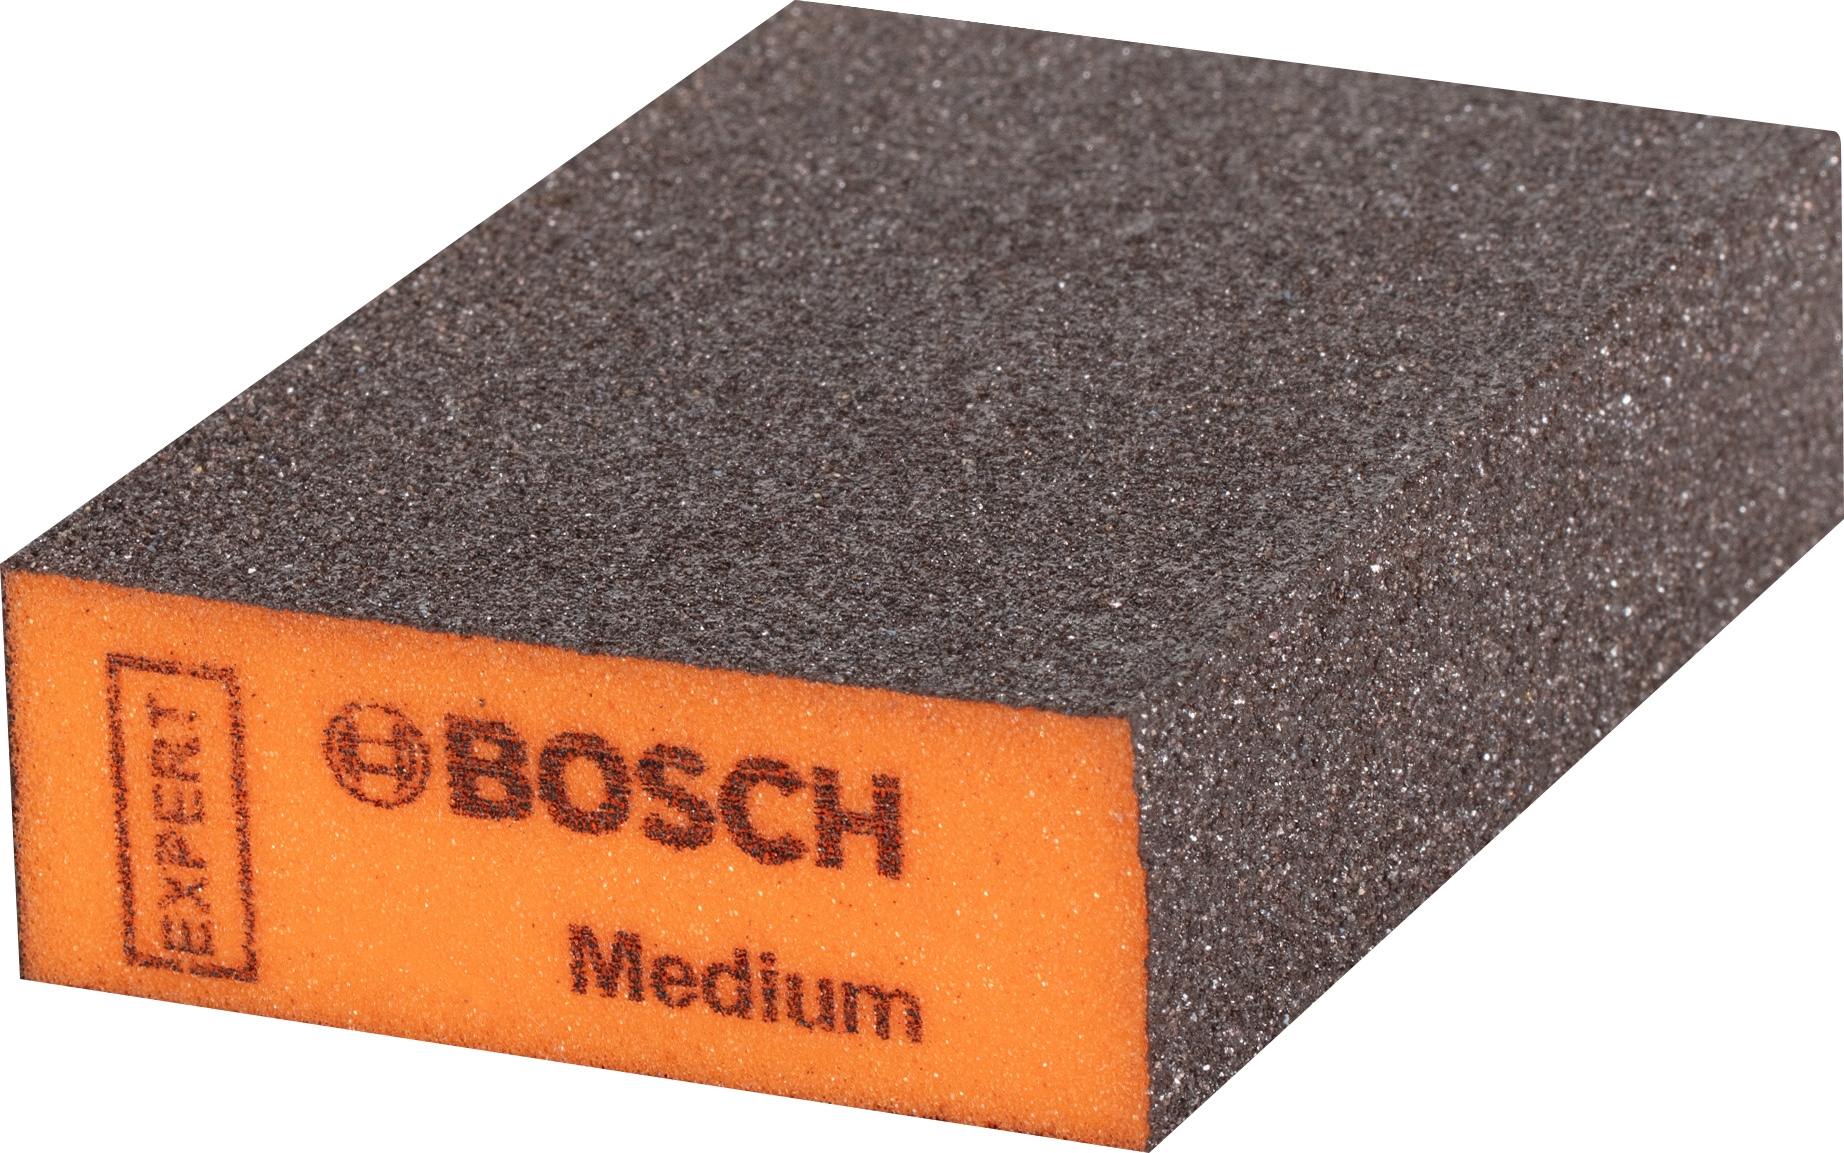 Houba brusná Bosch Expert S471 69×26×97 mm střední